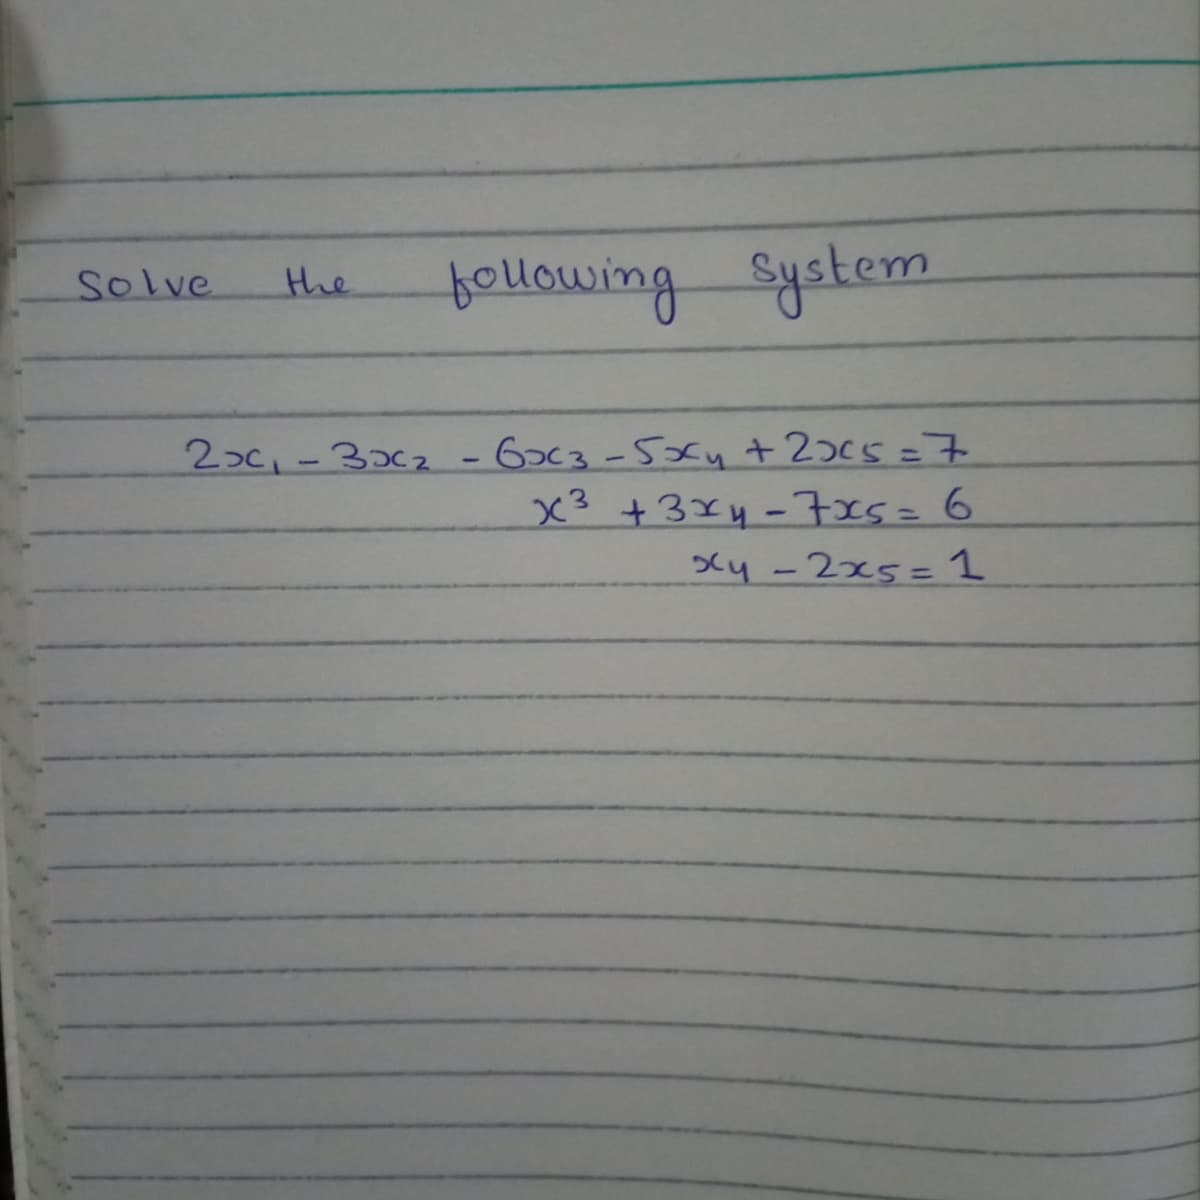 tollowing System
Solve
the
2>c,-3c2-63-52fy +20c5=7
x3 +3x4-7x5=6
Xy -2x5= 1
